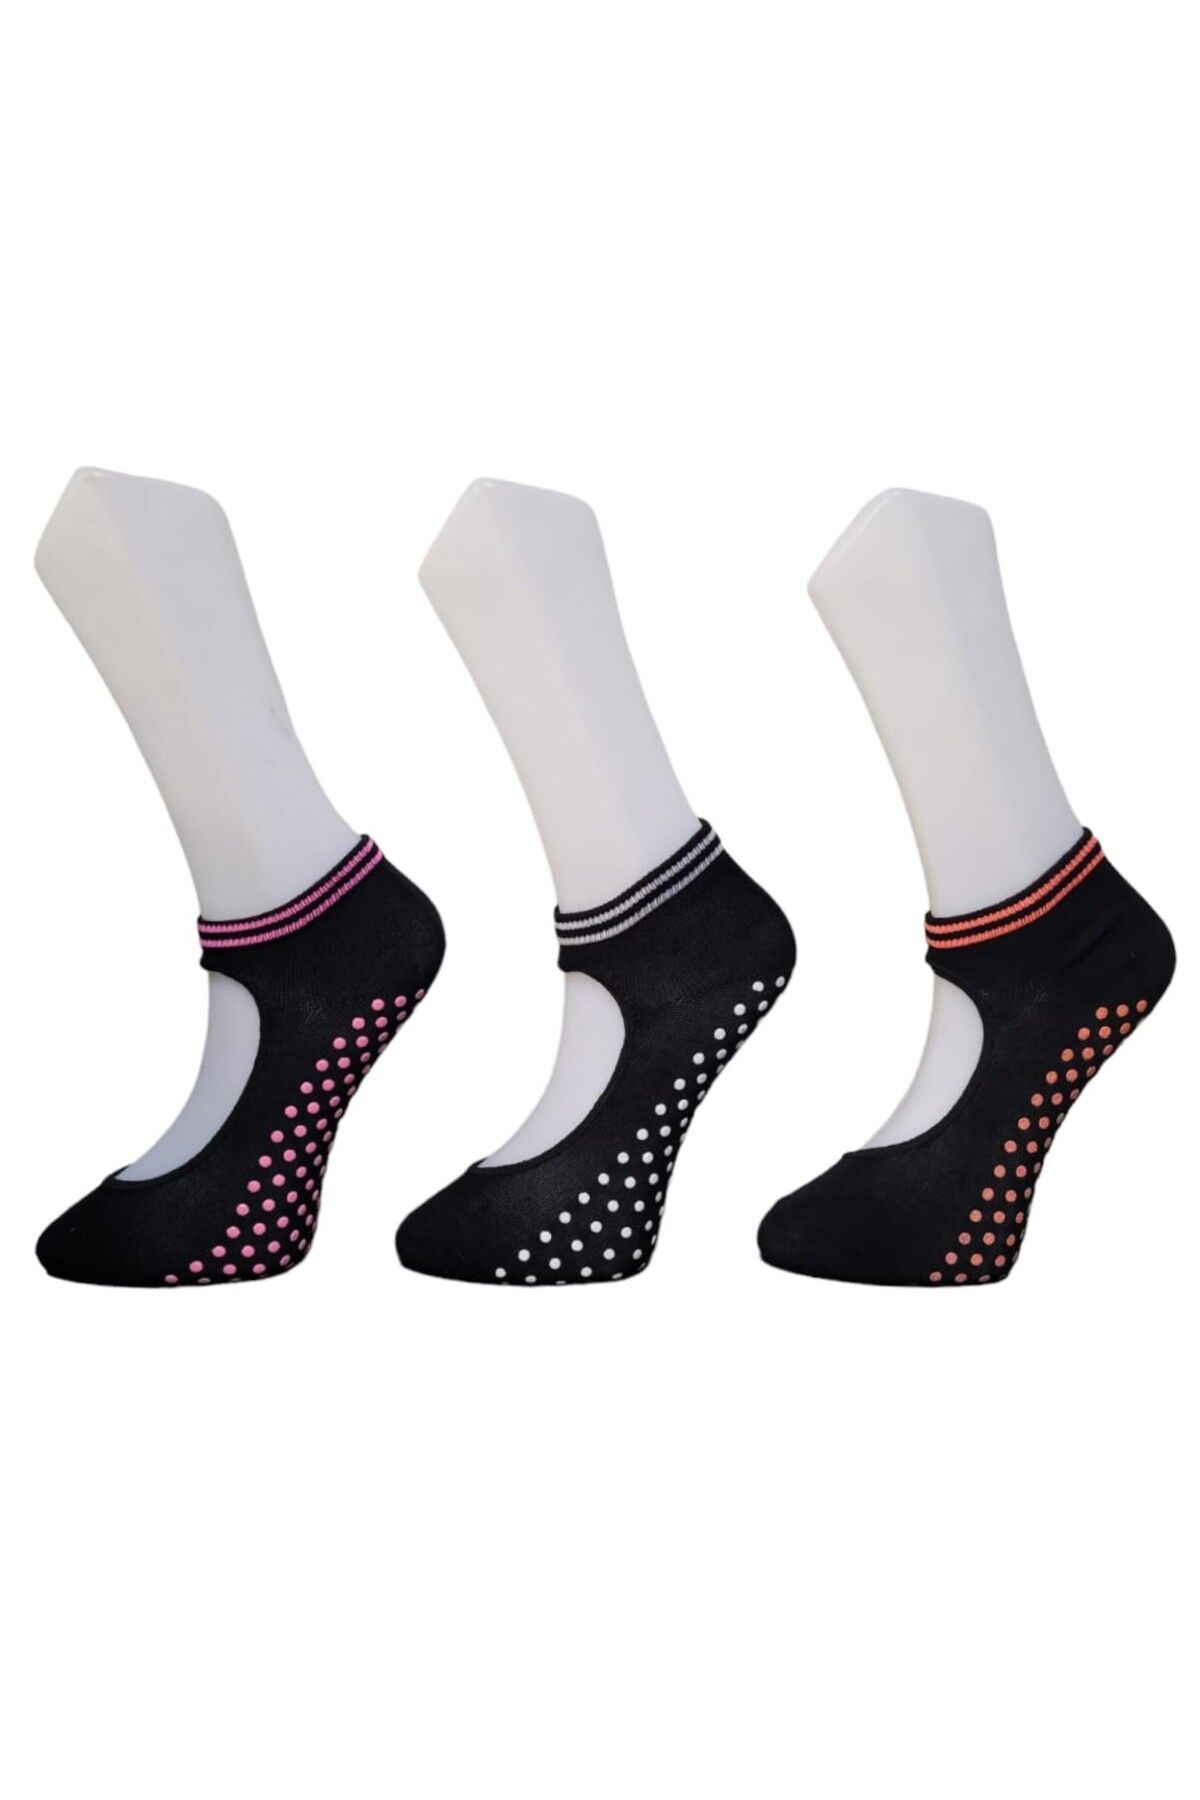 Fanilam 3 Çift Bilekli Kaydırmaz Tabanlı Renkli Plates Ve Yoga Çorabı, Spor Ve Aktivite Çorabı